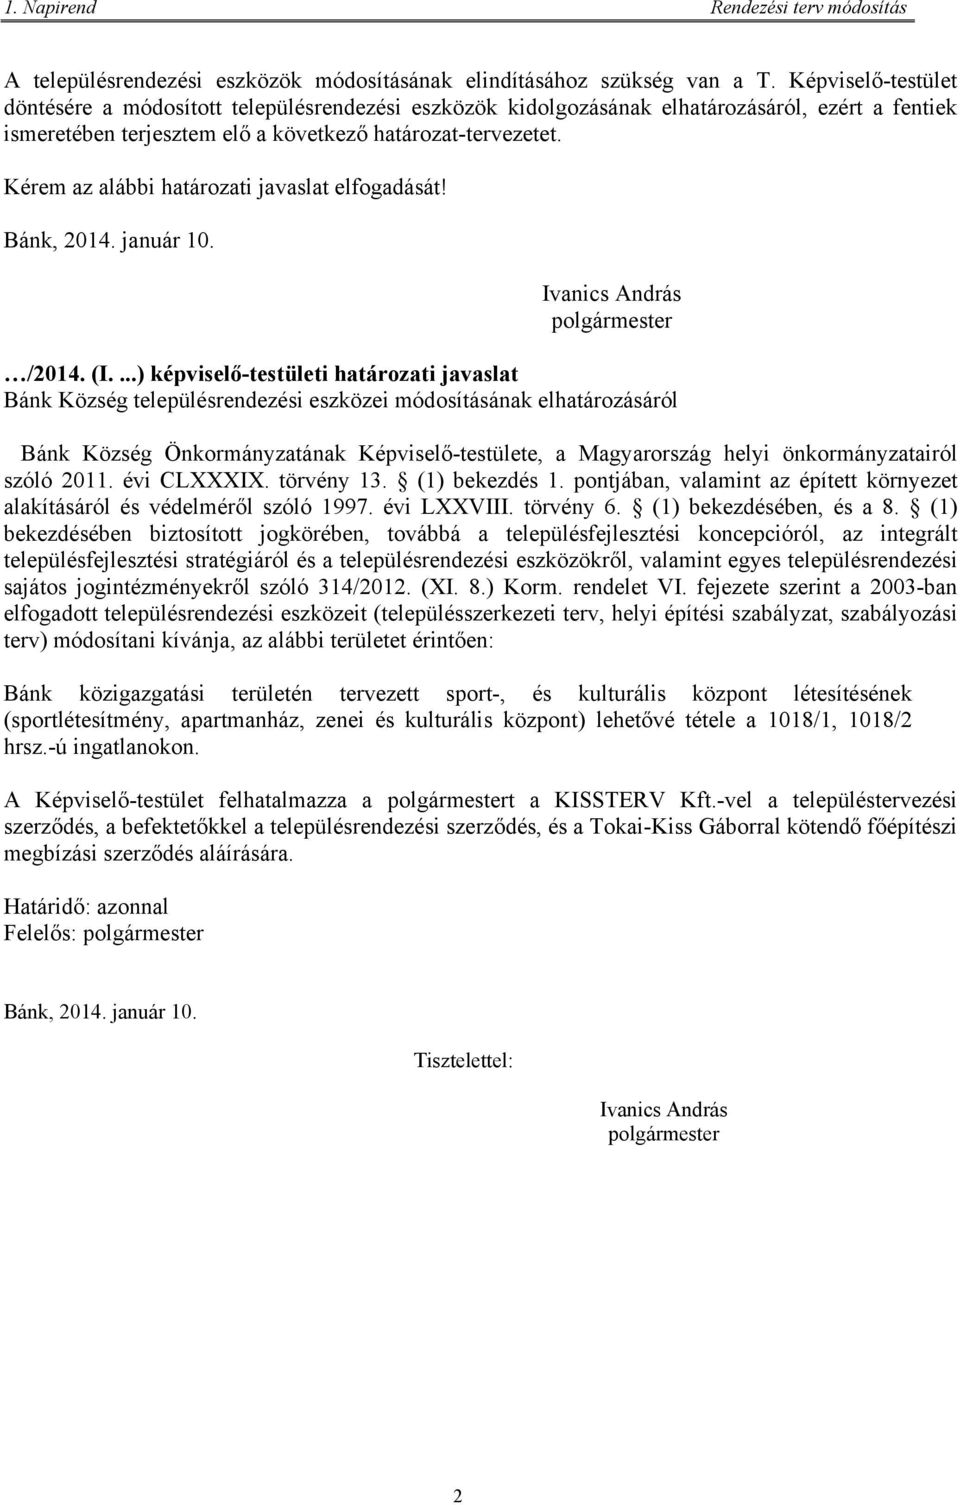 Kérem az alábbi határozati javaslat elfogadását! Bánk, 2014. január 10. Ivanics András polgármester /2014. (I.